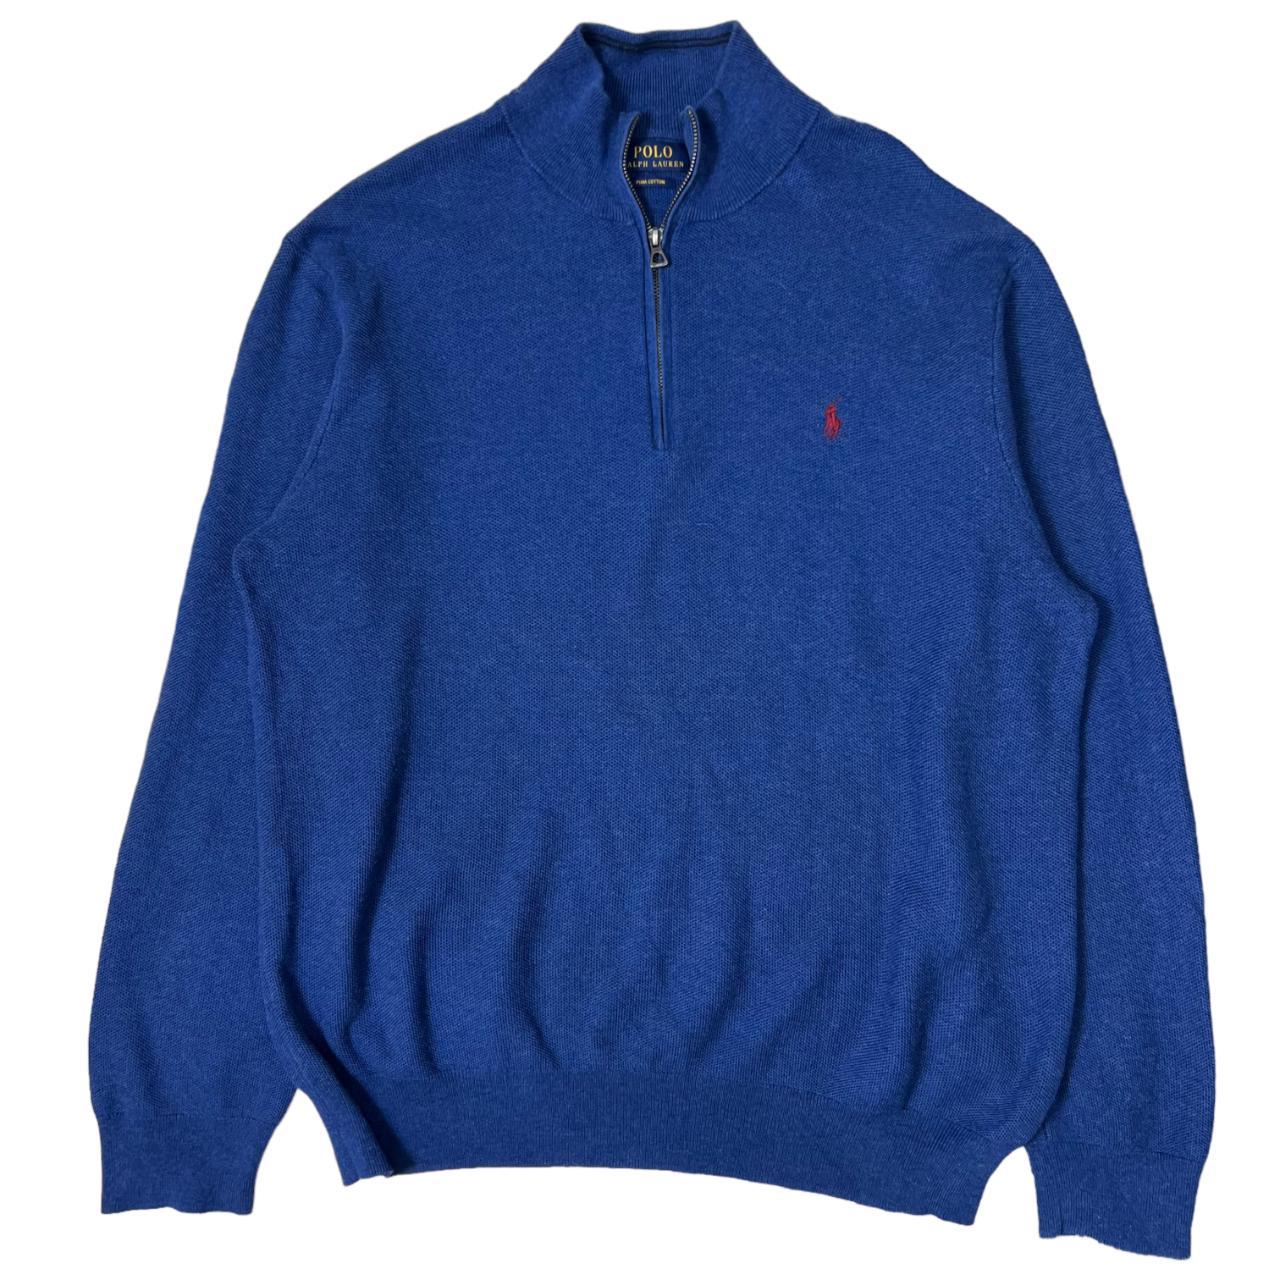 polo ralph lauren sweatshirt 1/4 zip Condition:... - Depop